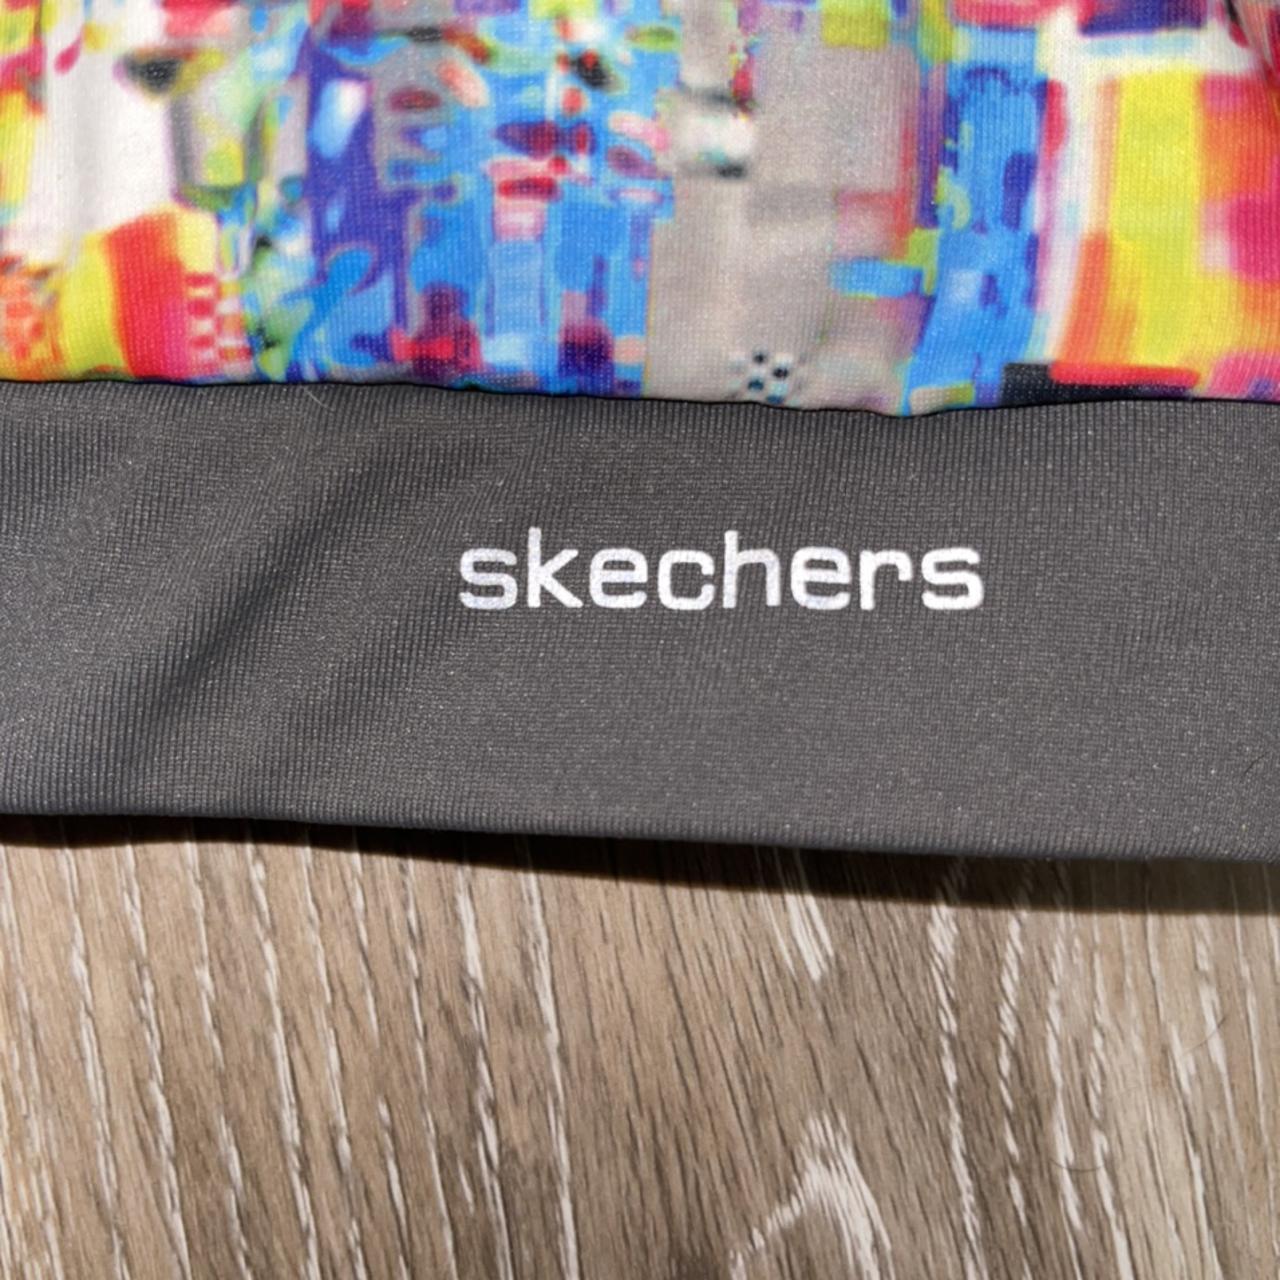 Skechers racerback sports bra. Multicolor pattern - Depop